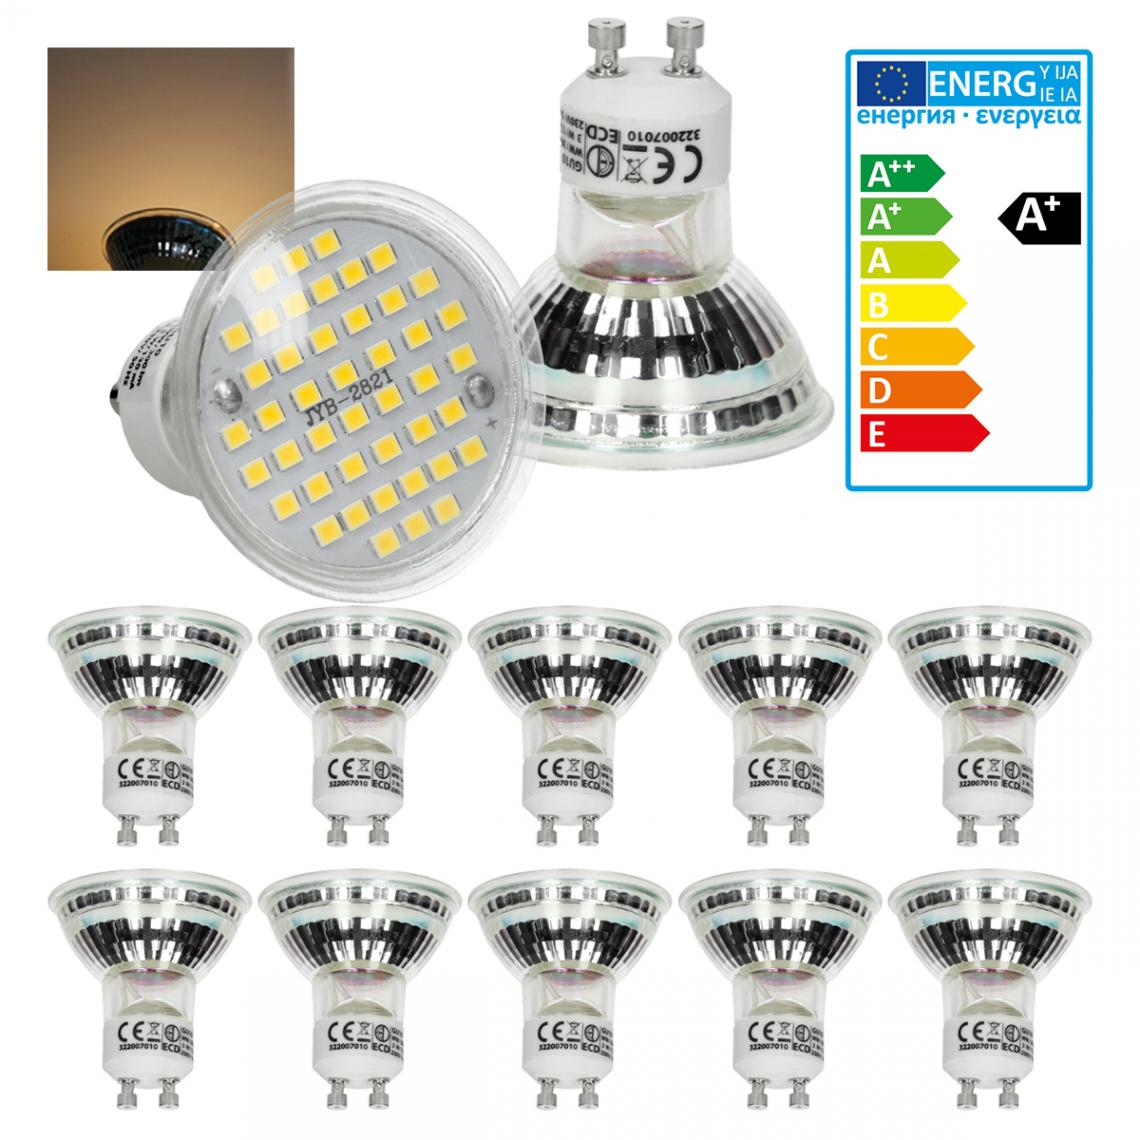 Ecd Germany - ECD Germany 10 x LED GU10 44SMD Spot 3W - Lampe à LED 20W - en verre - 251 lumens - Blanc chaud 3000K - Spot à encastrer - Ampoules LED